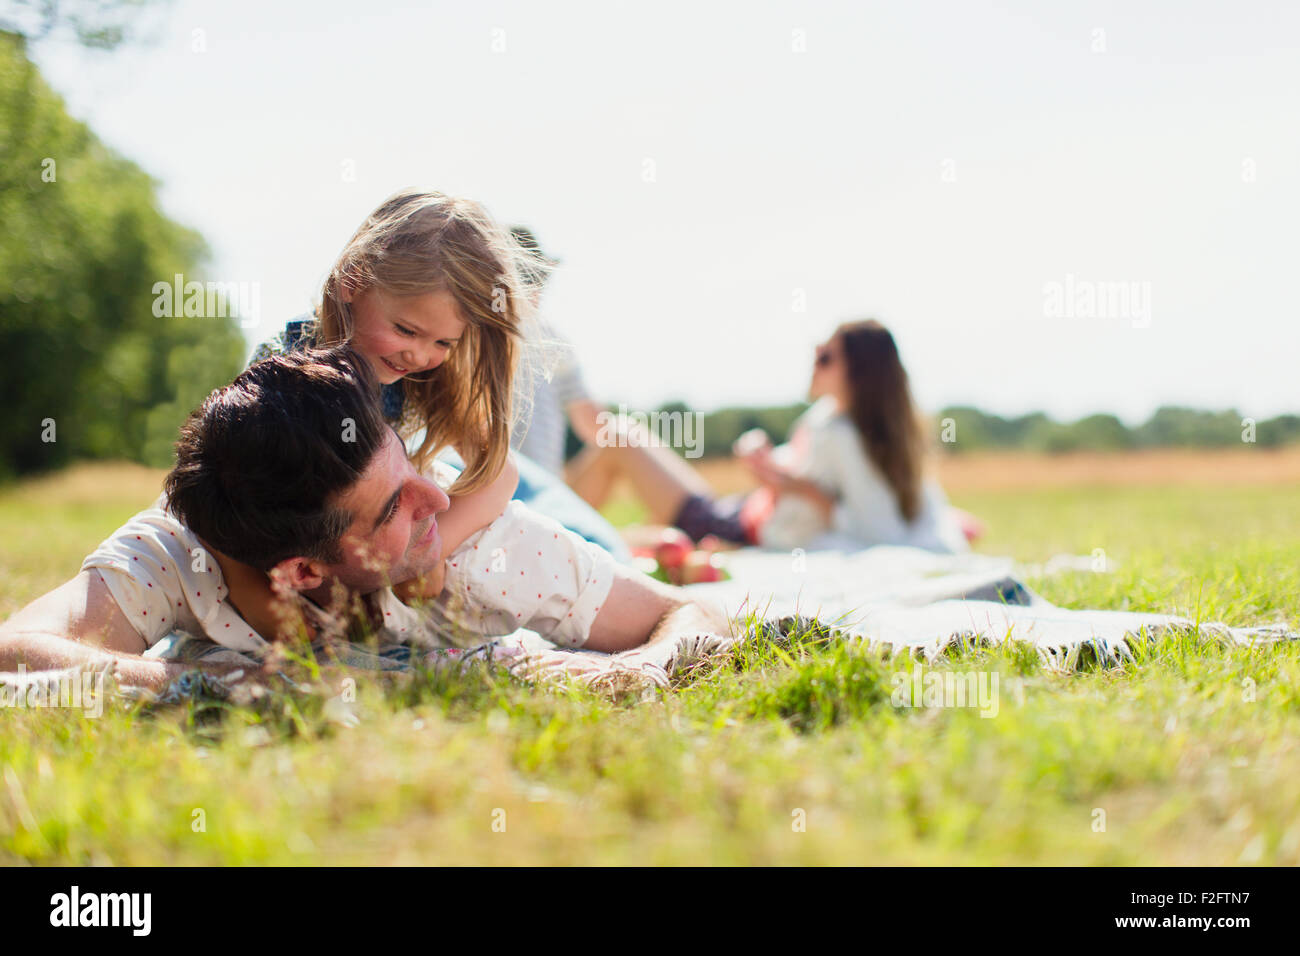 Hija afectuosa sentar encima del padre en un soleado día de campo Foto de stock